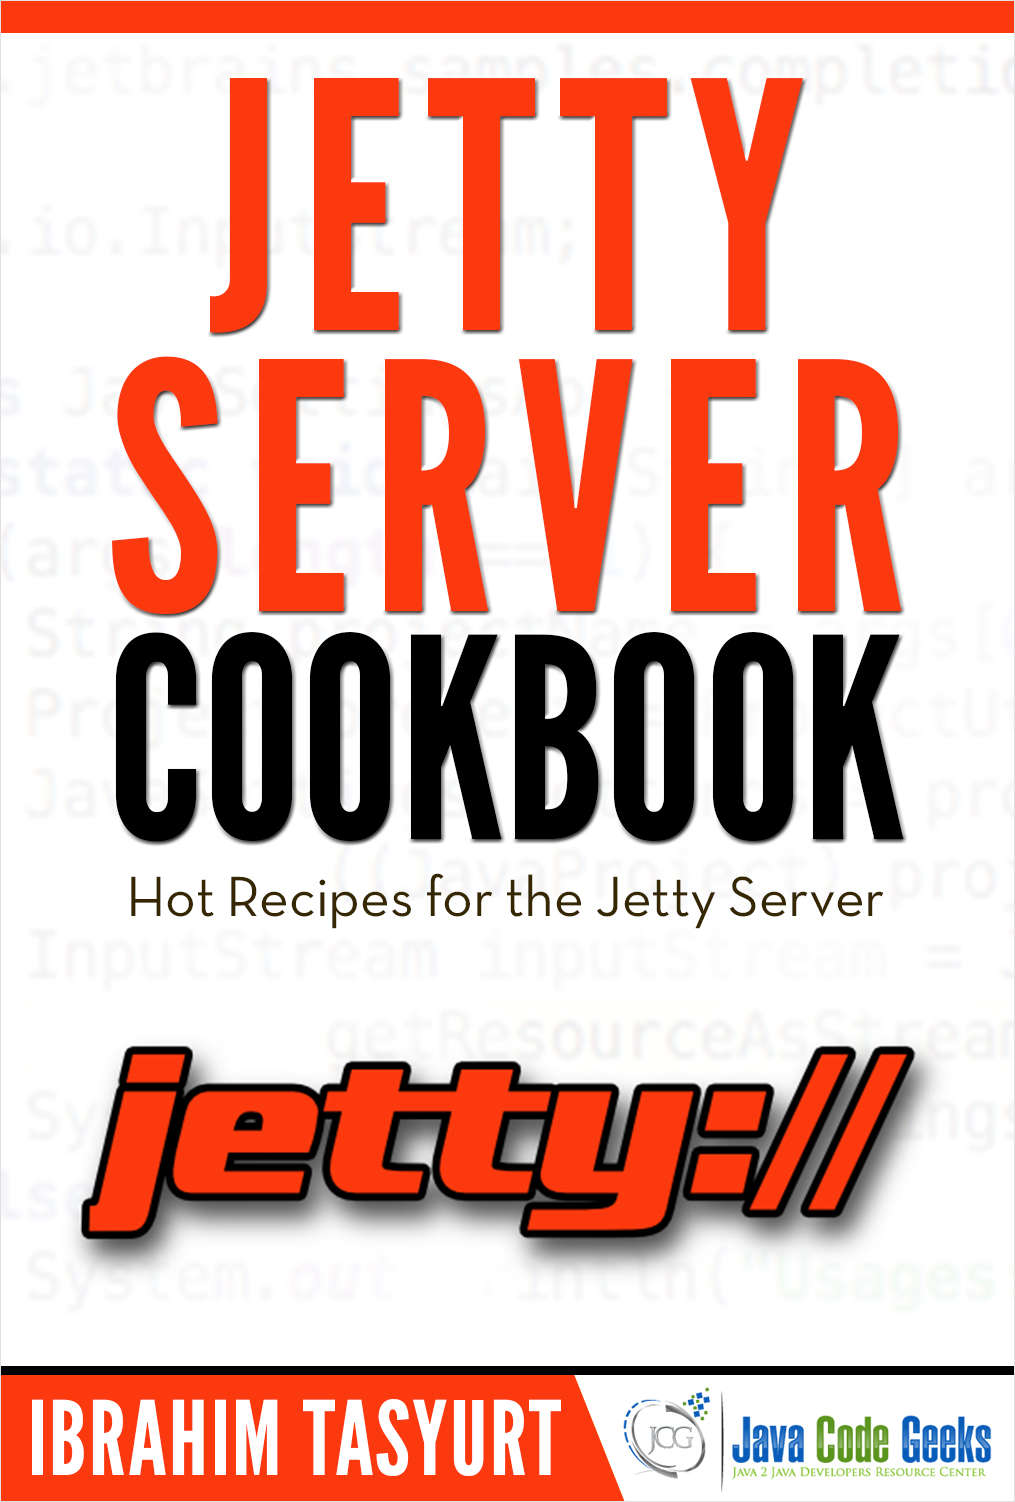 Jetty Server Cookbook